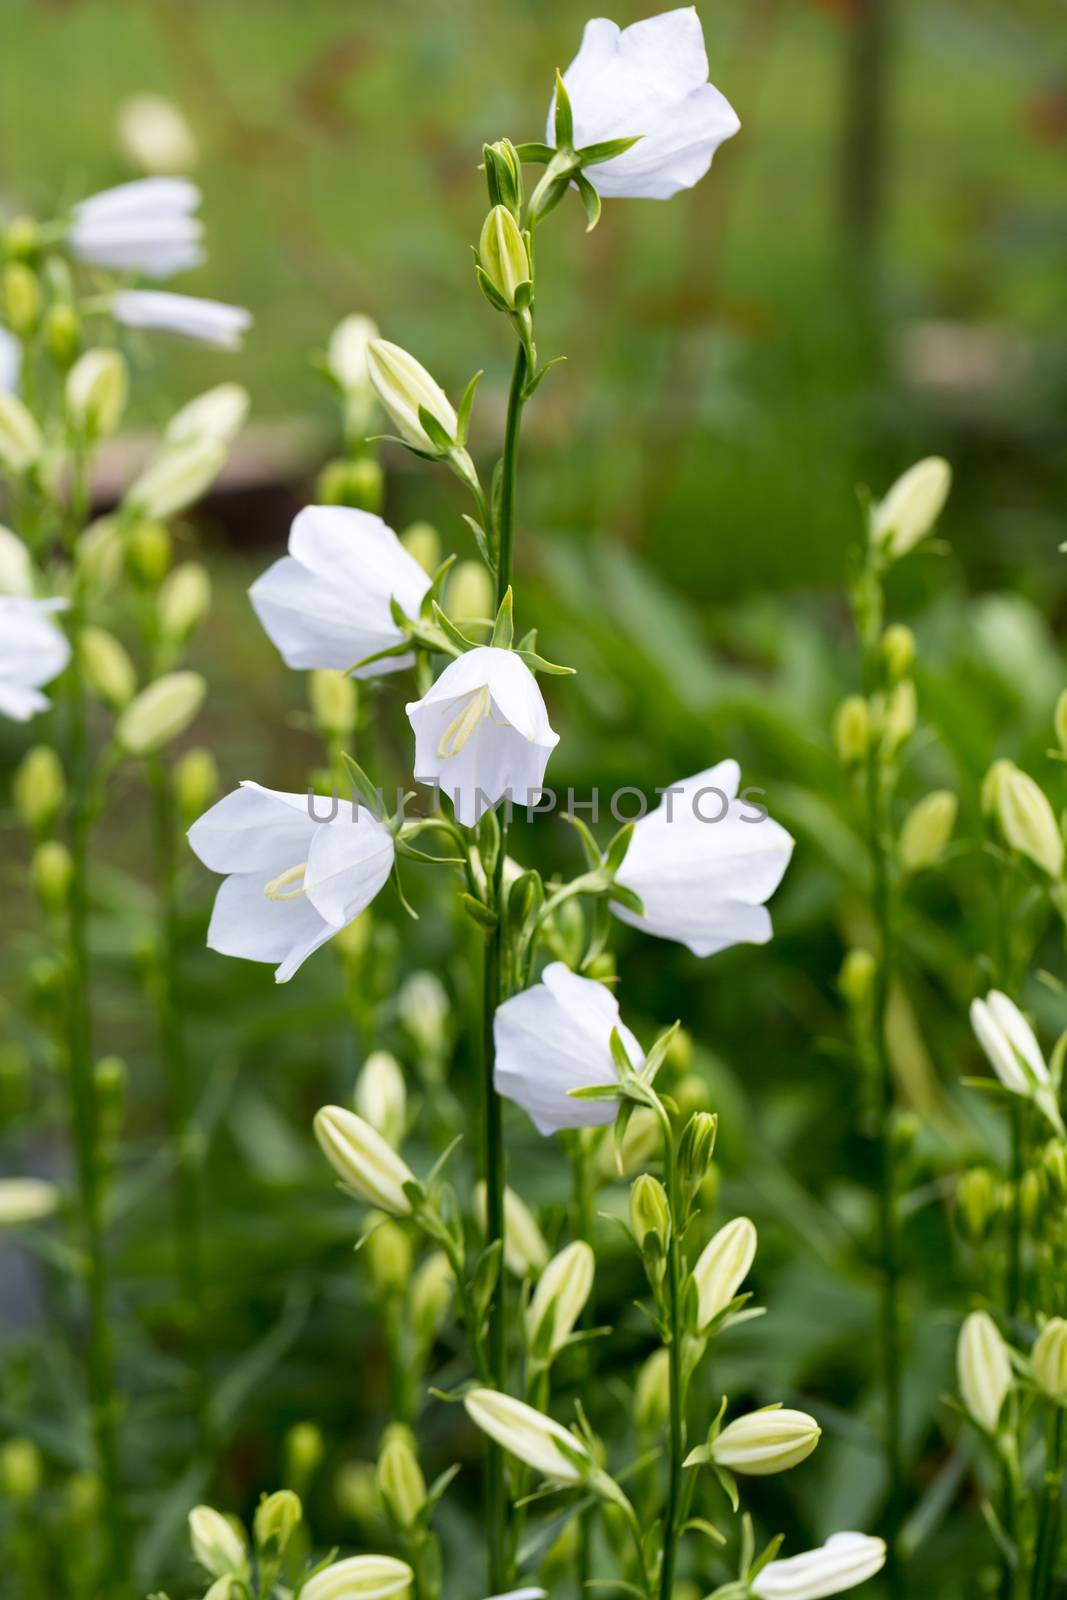 Campanula or canterbury bells flowers  by wjarek